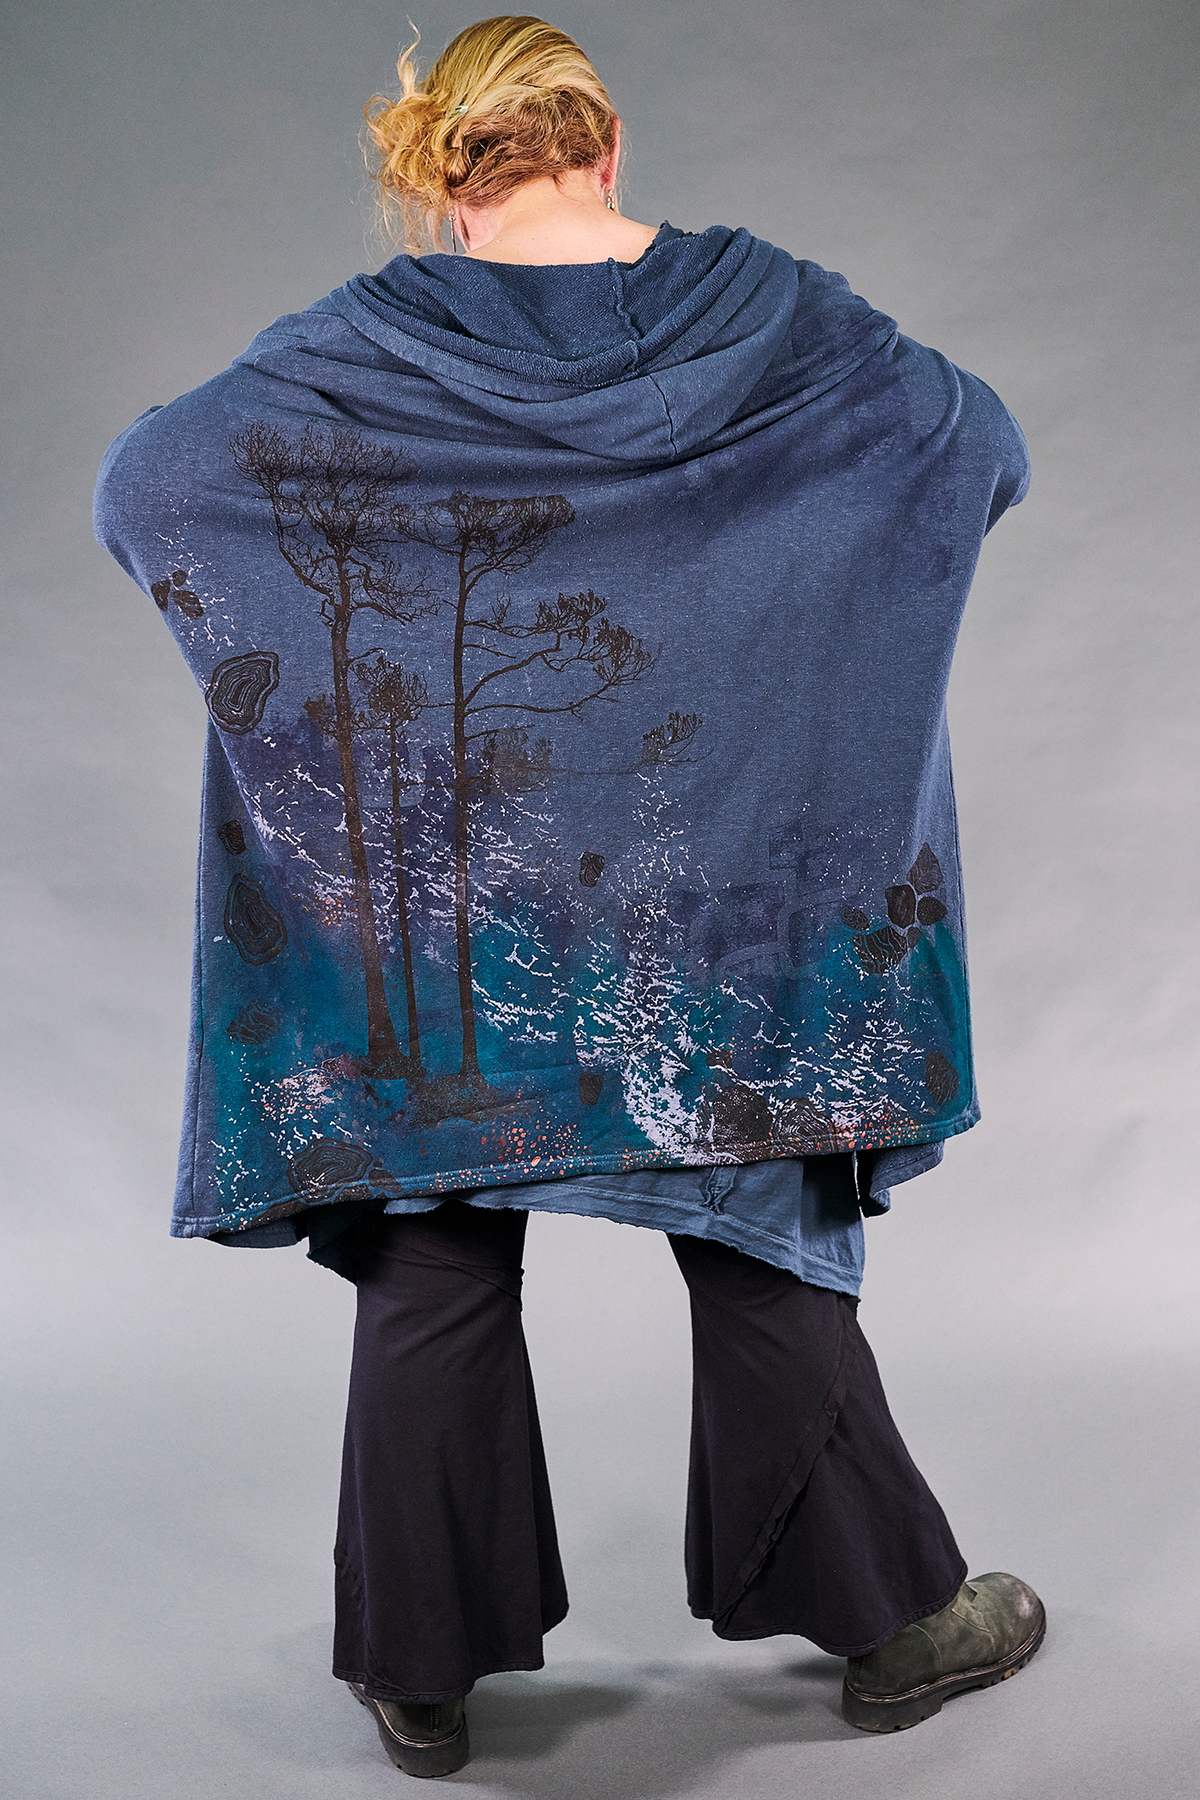 5261 Hooded Cloak-Blue Cypress-Big Sur Astral Forest